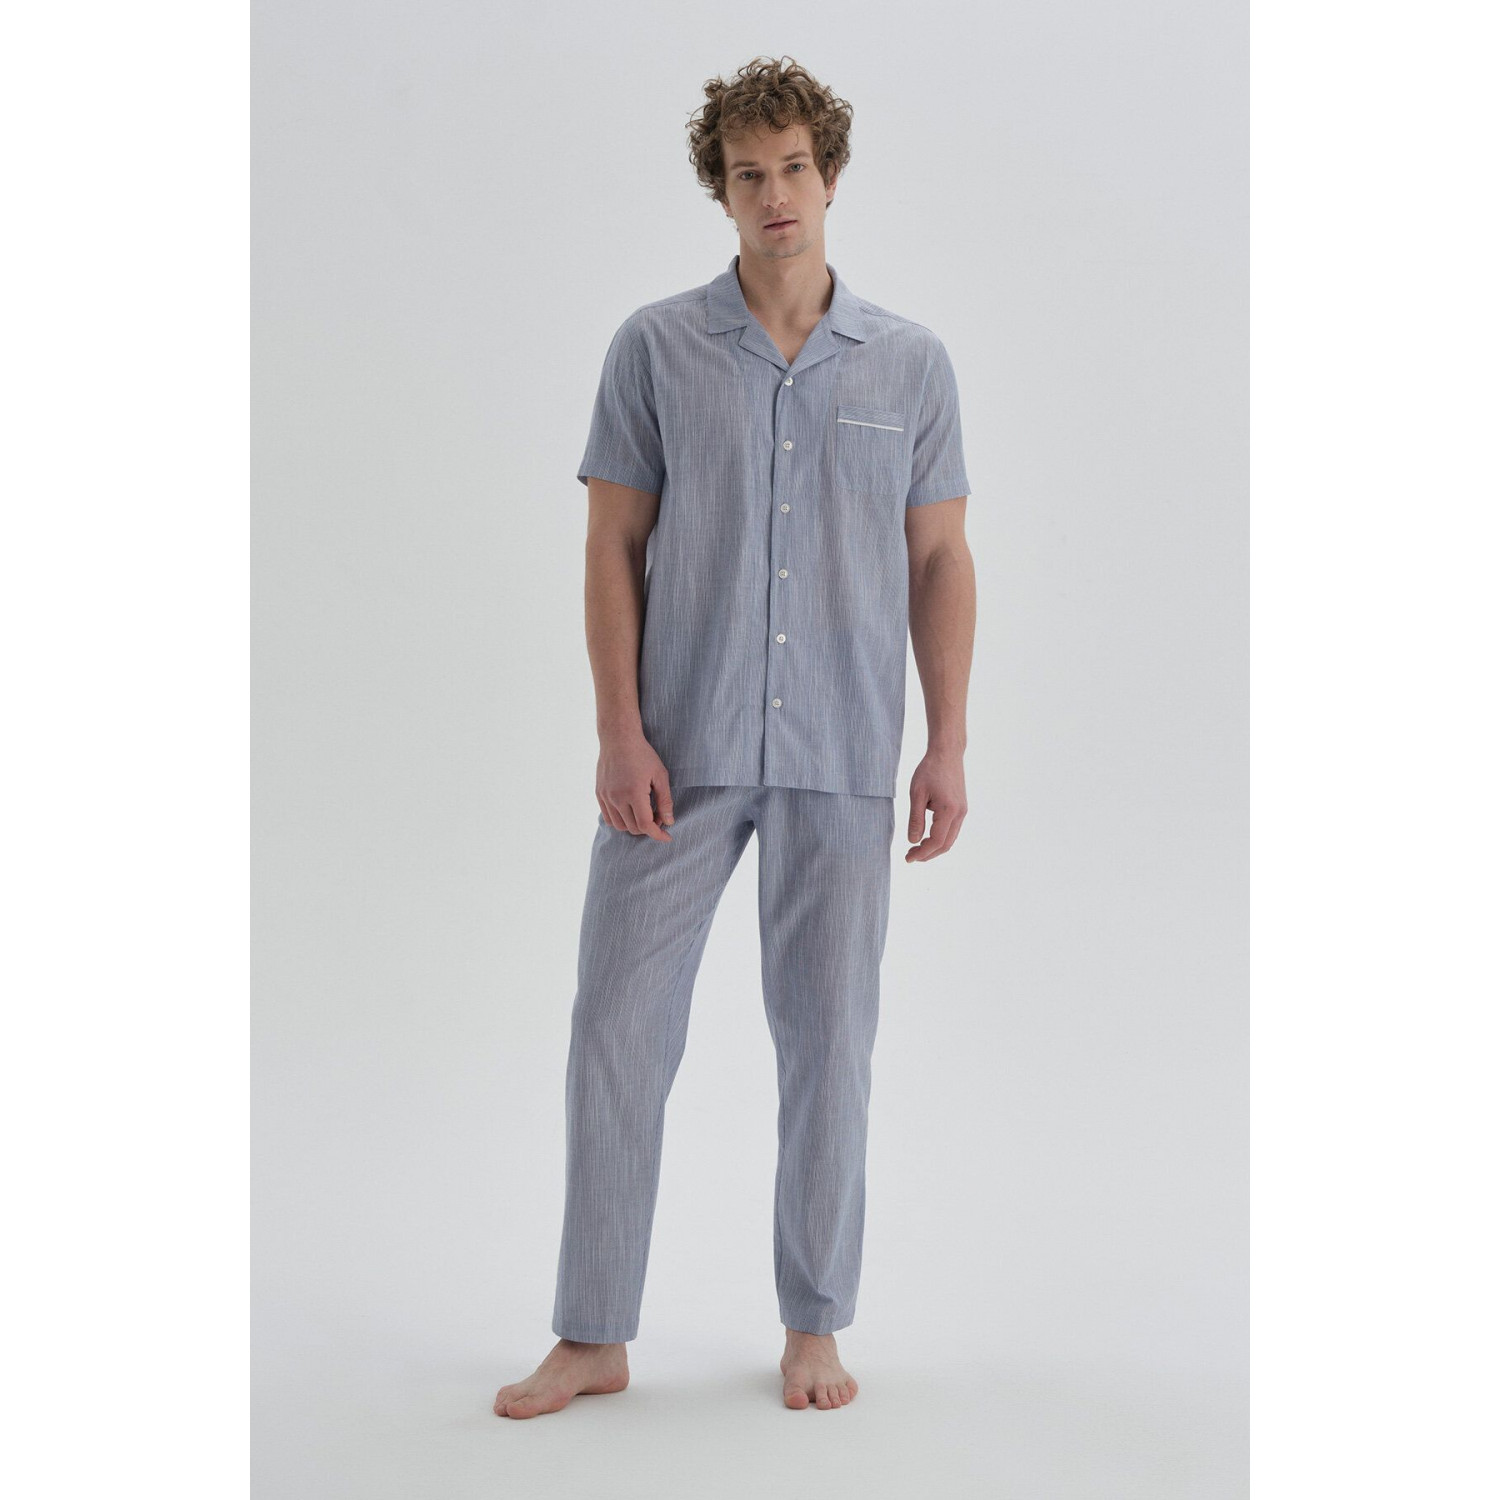 Kişi üçün pijama, mavi, 2XL - 18017NG